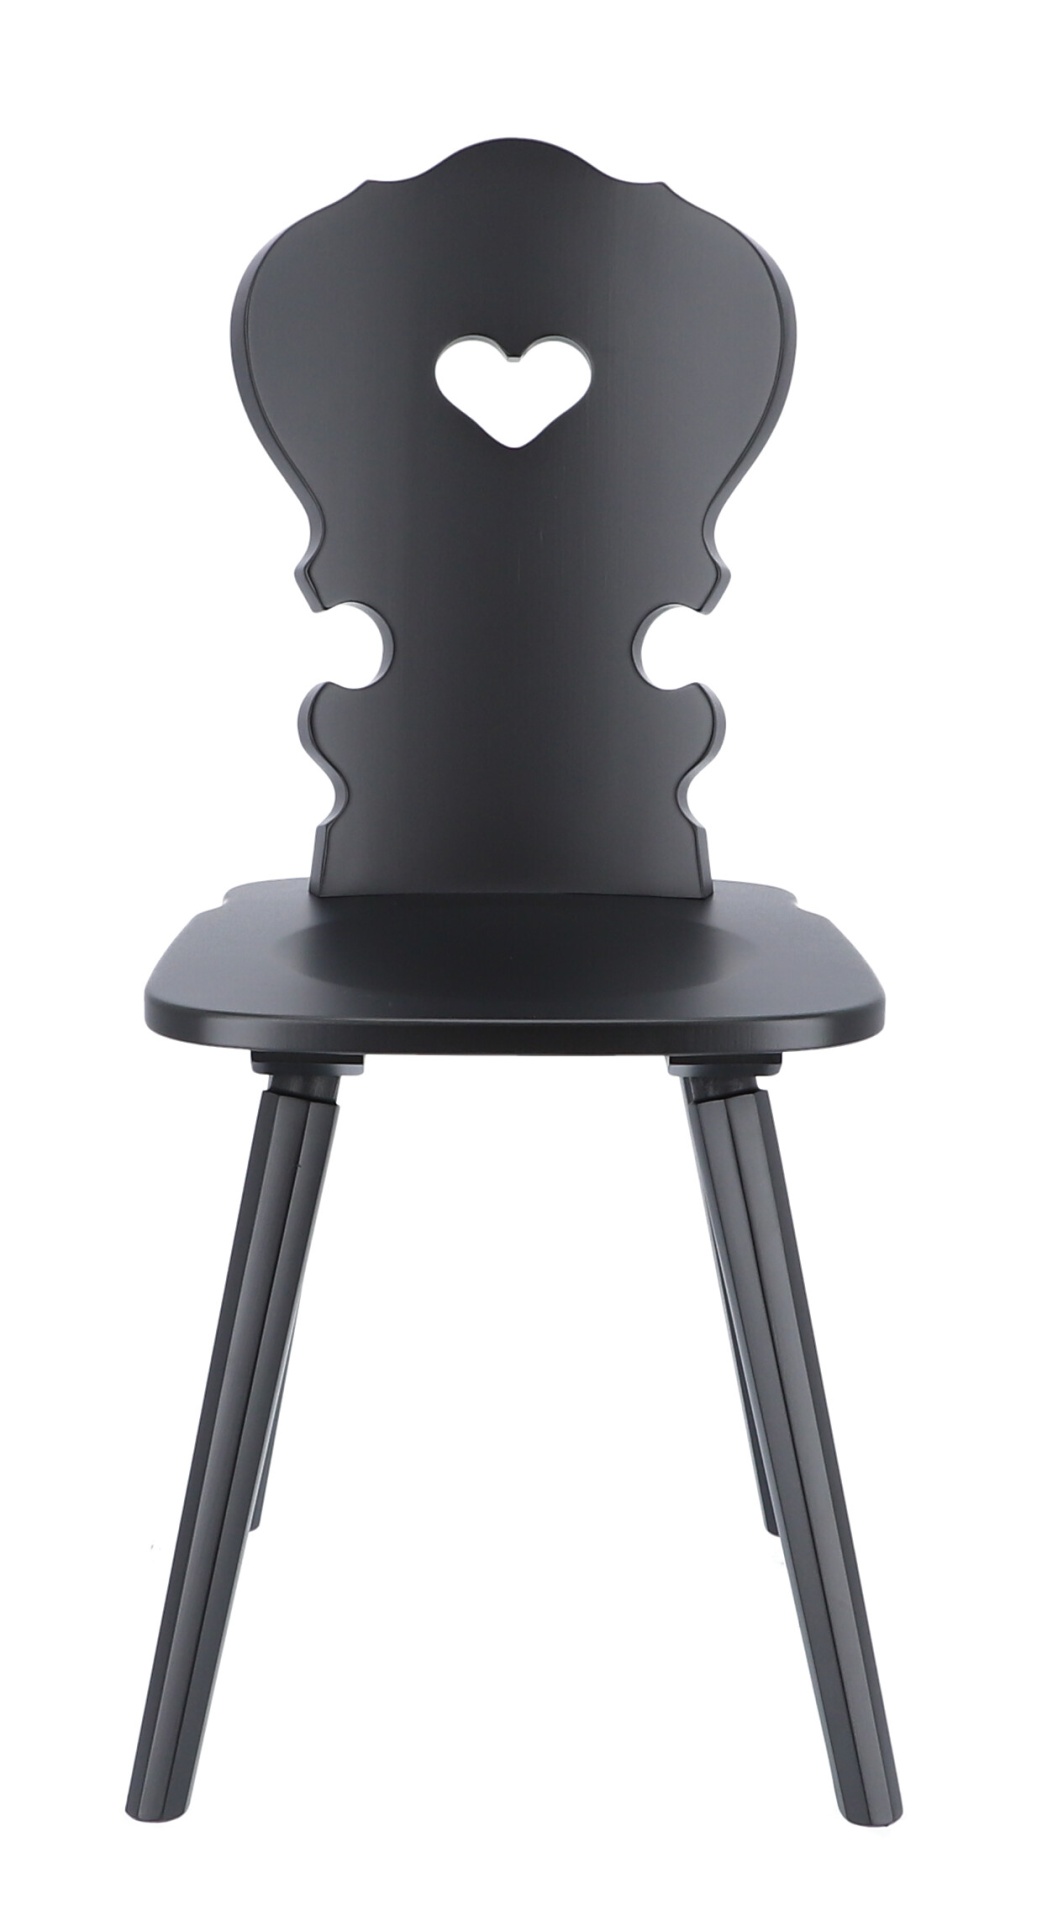 Der Stuhl Vienna ist ein absoluter Klassiker. Gefertigt wurde er aus Buchenholz und ist ein Produkt der Marke Jan Kurtz. Der Stuhl besitzt eine schwarze Farbe.